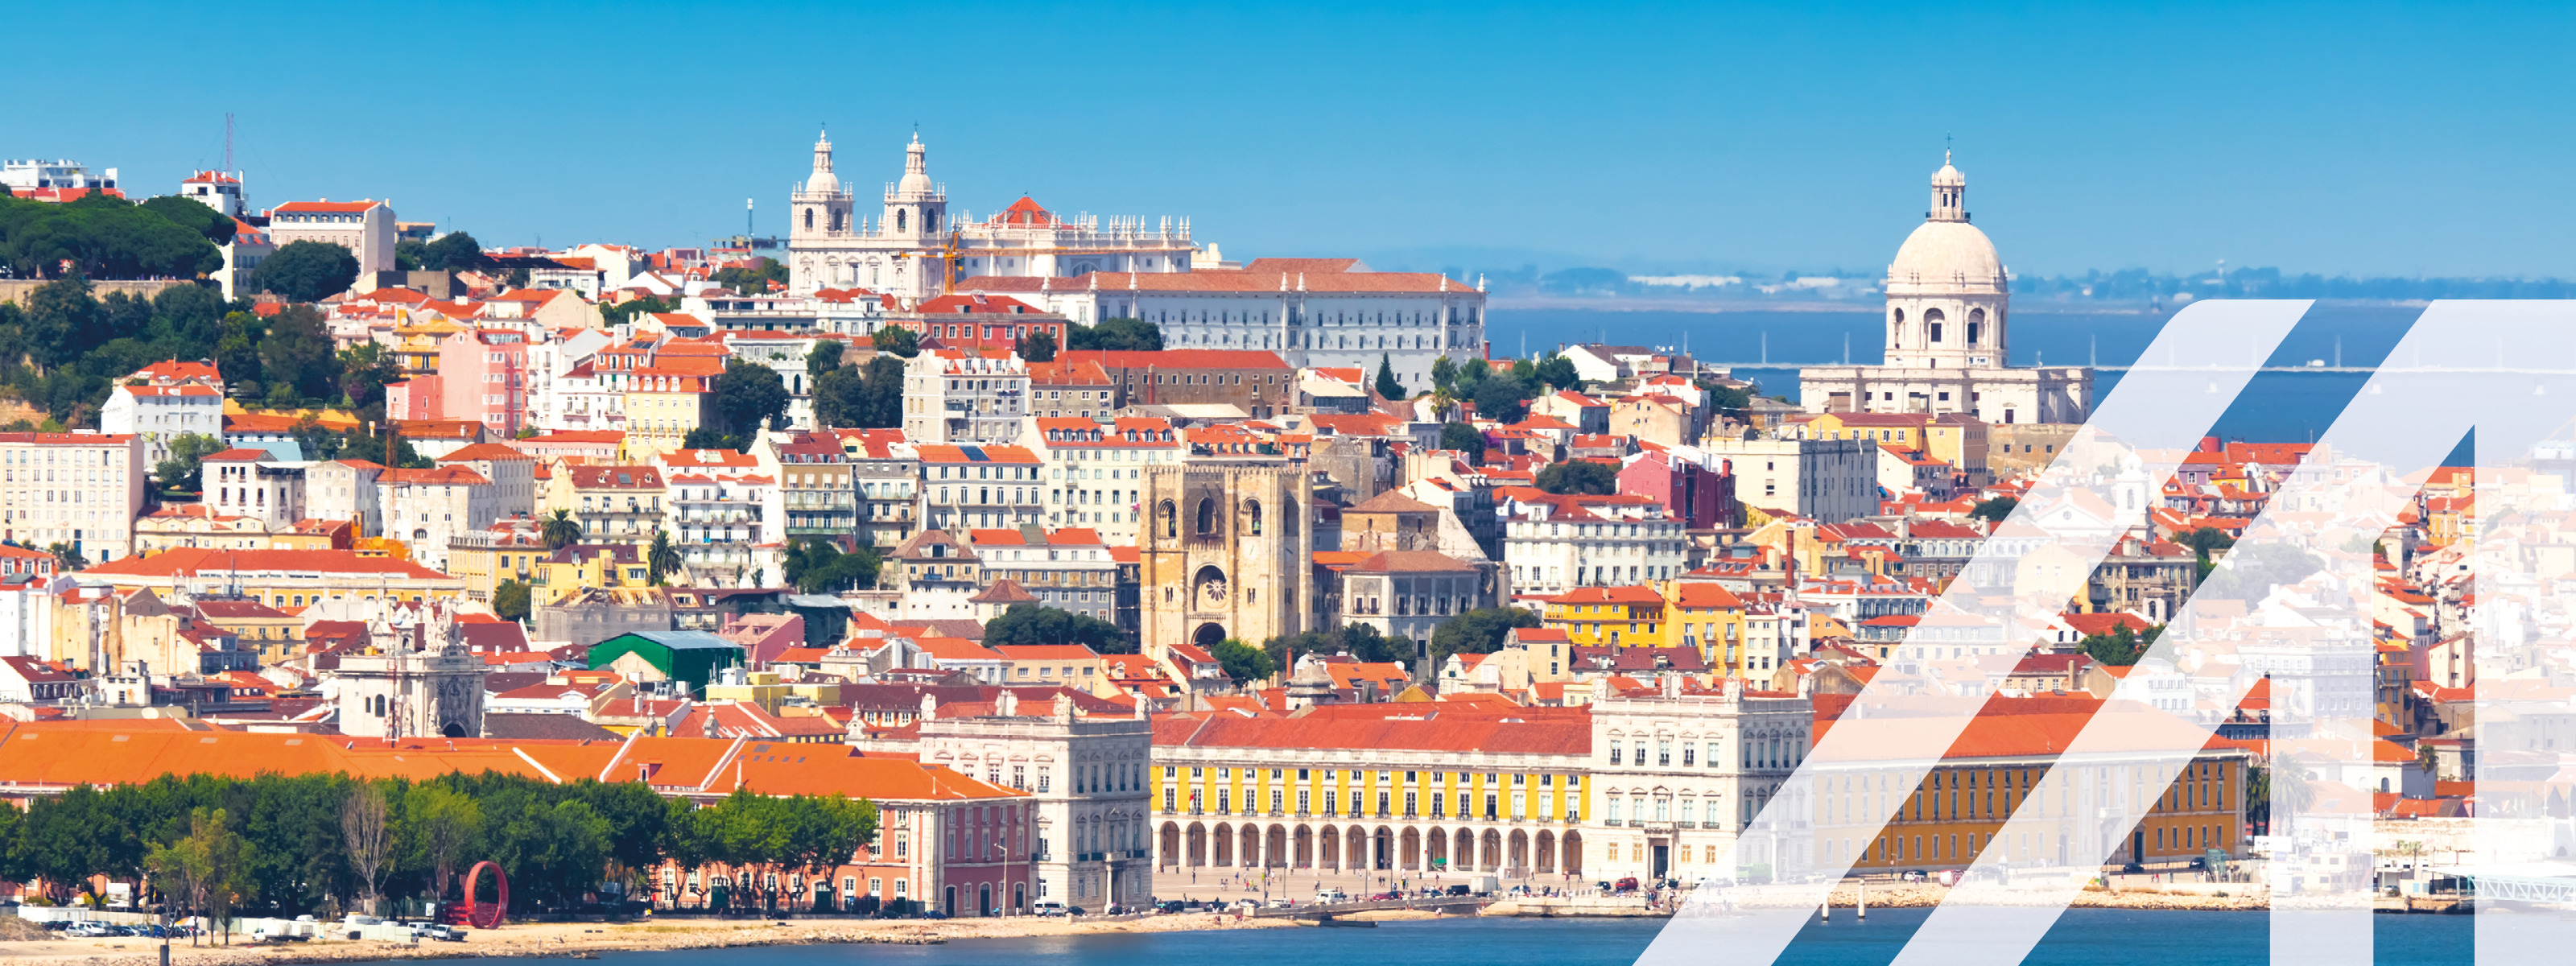 Panorama von Lissabon mit vielen historischen Gebäuden, Kirchen, weißen Häusern und roten Dächern unter blauem Himmel, am Wasser gelegen. 